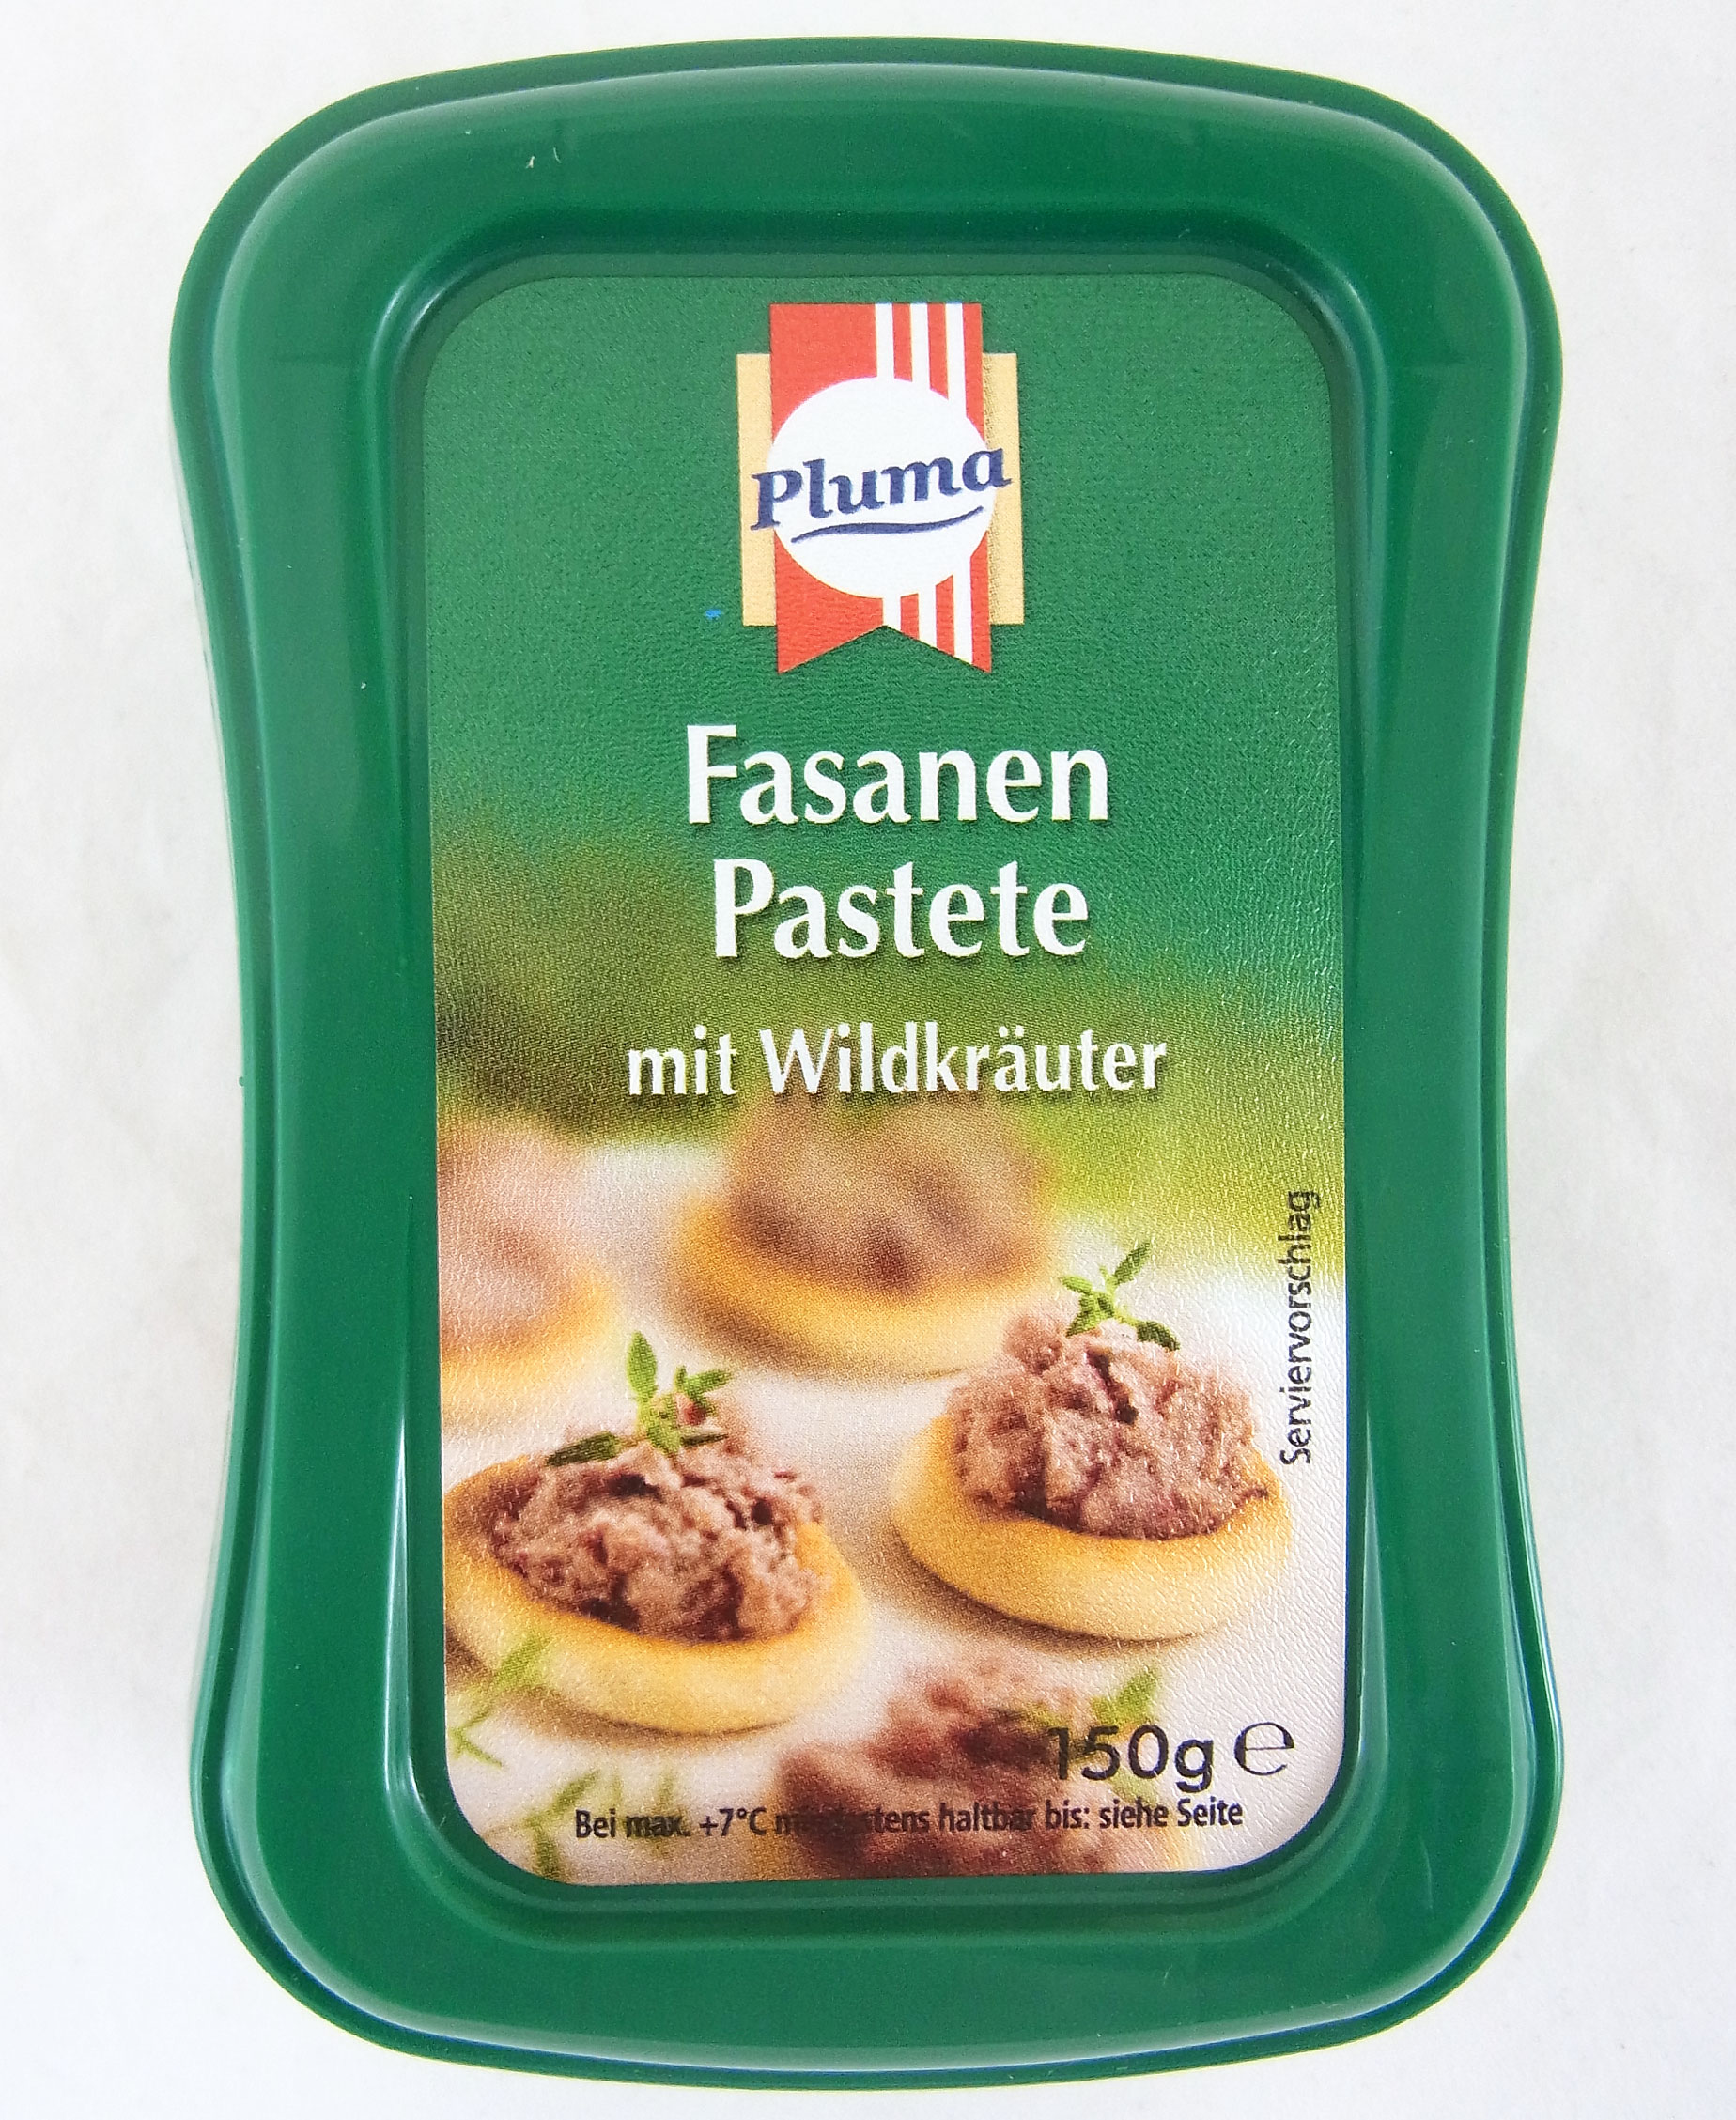 Pluma Fasanen Pastete mit Wildkräuter | Lebensmittelklarheit